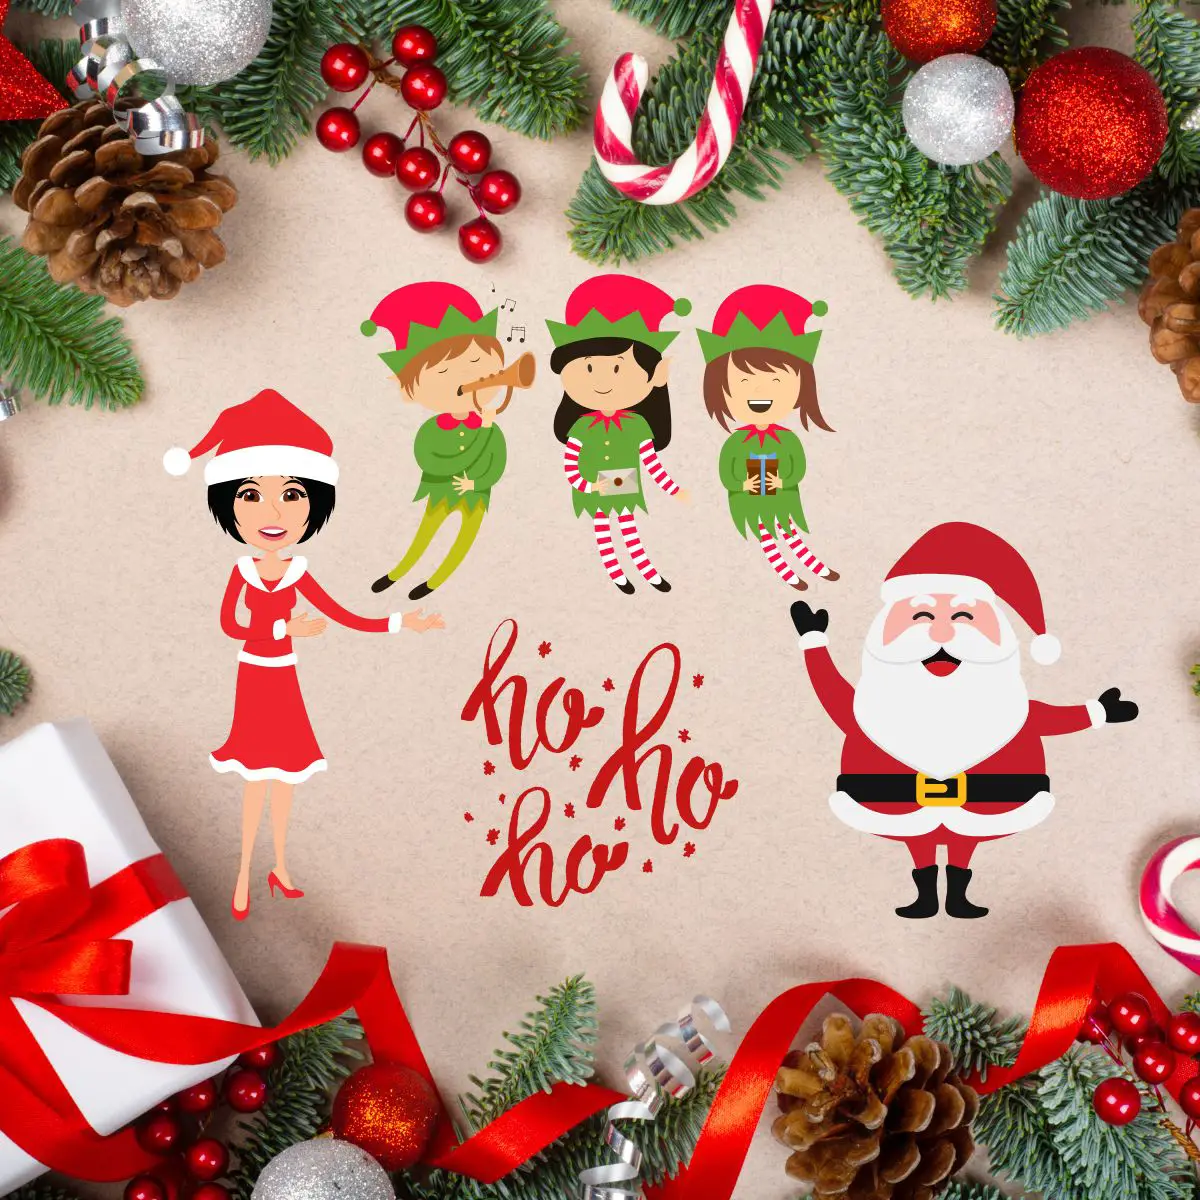 Weihnachtlich geschmückte Bildumrandung aus Tannenzweigen, Geschenken und Zuckerstangen. In der Mitte der Weihnachtsmann mit seiner Frau und seinen Elfen. Alle sind fröhlich und lachen.